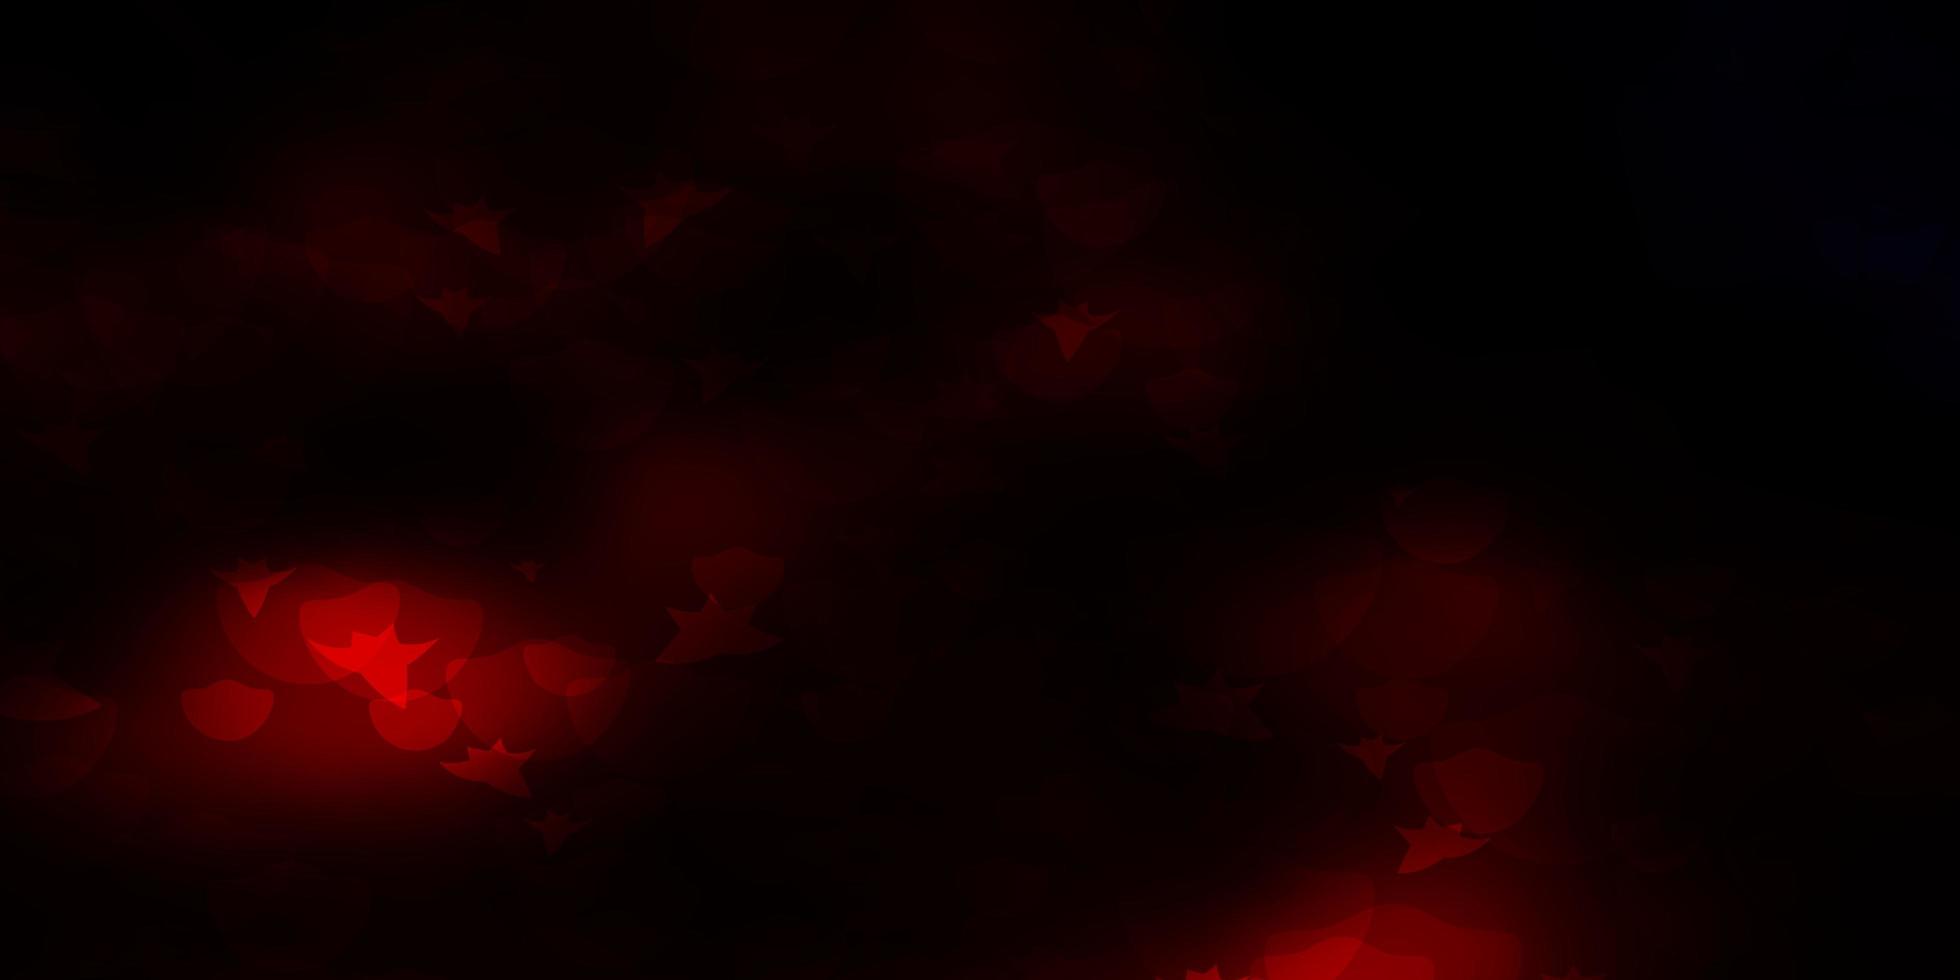 sfondo vettoriale rosso scuro con cerchi stelle illustrazione astratta con macchie colorate stelle design per sfondi in tessuto